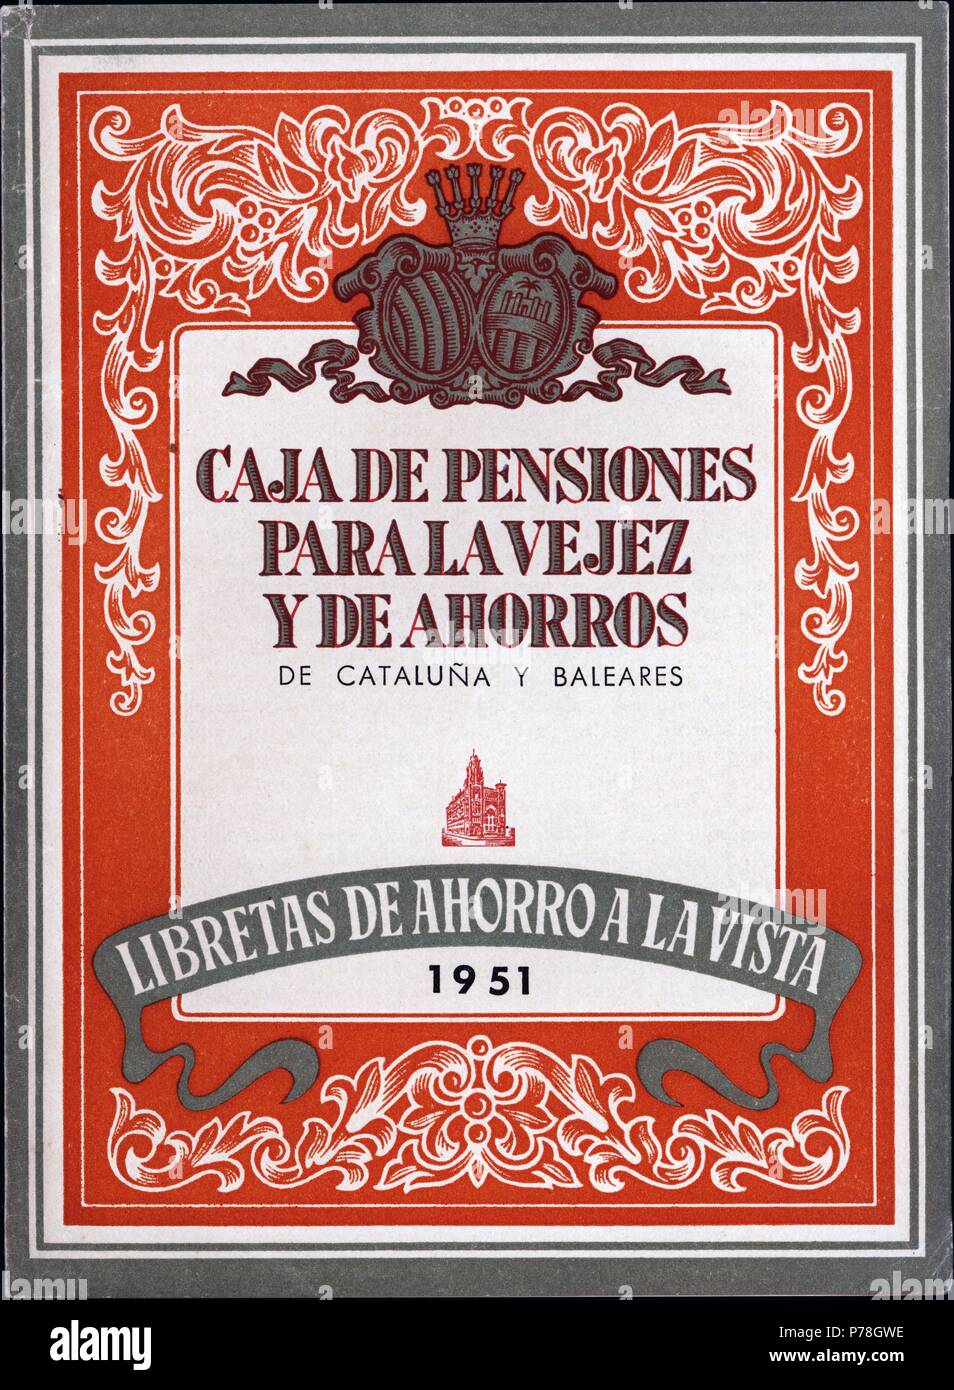 Libreta de ahorro de la Caja de Pensiones para la vejez y de Ahorros. Año  1951 Fotografía de stock - Alamy